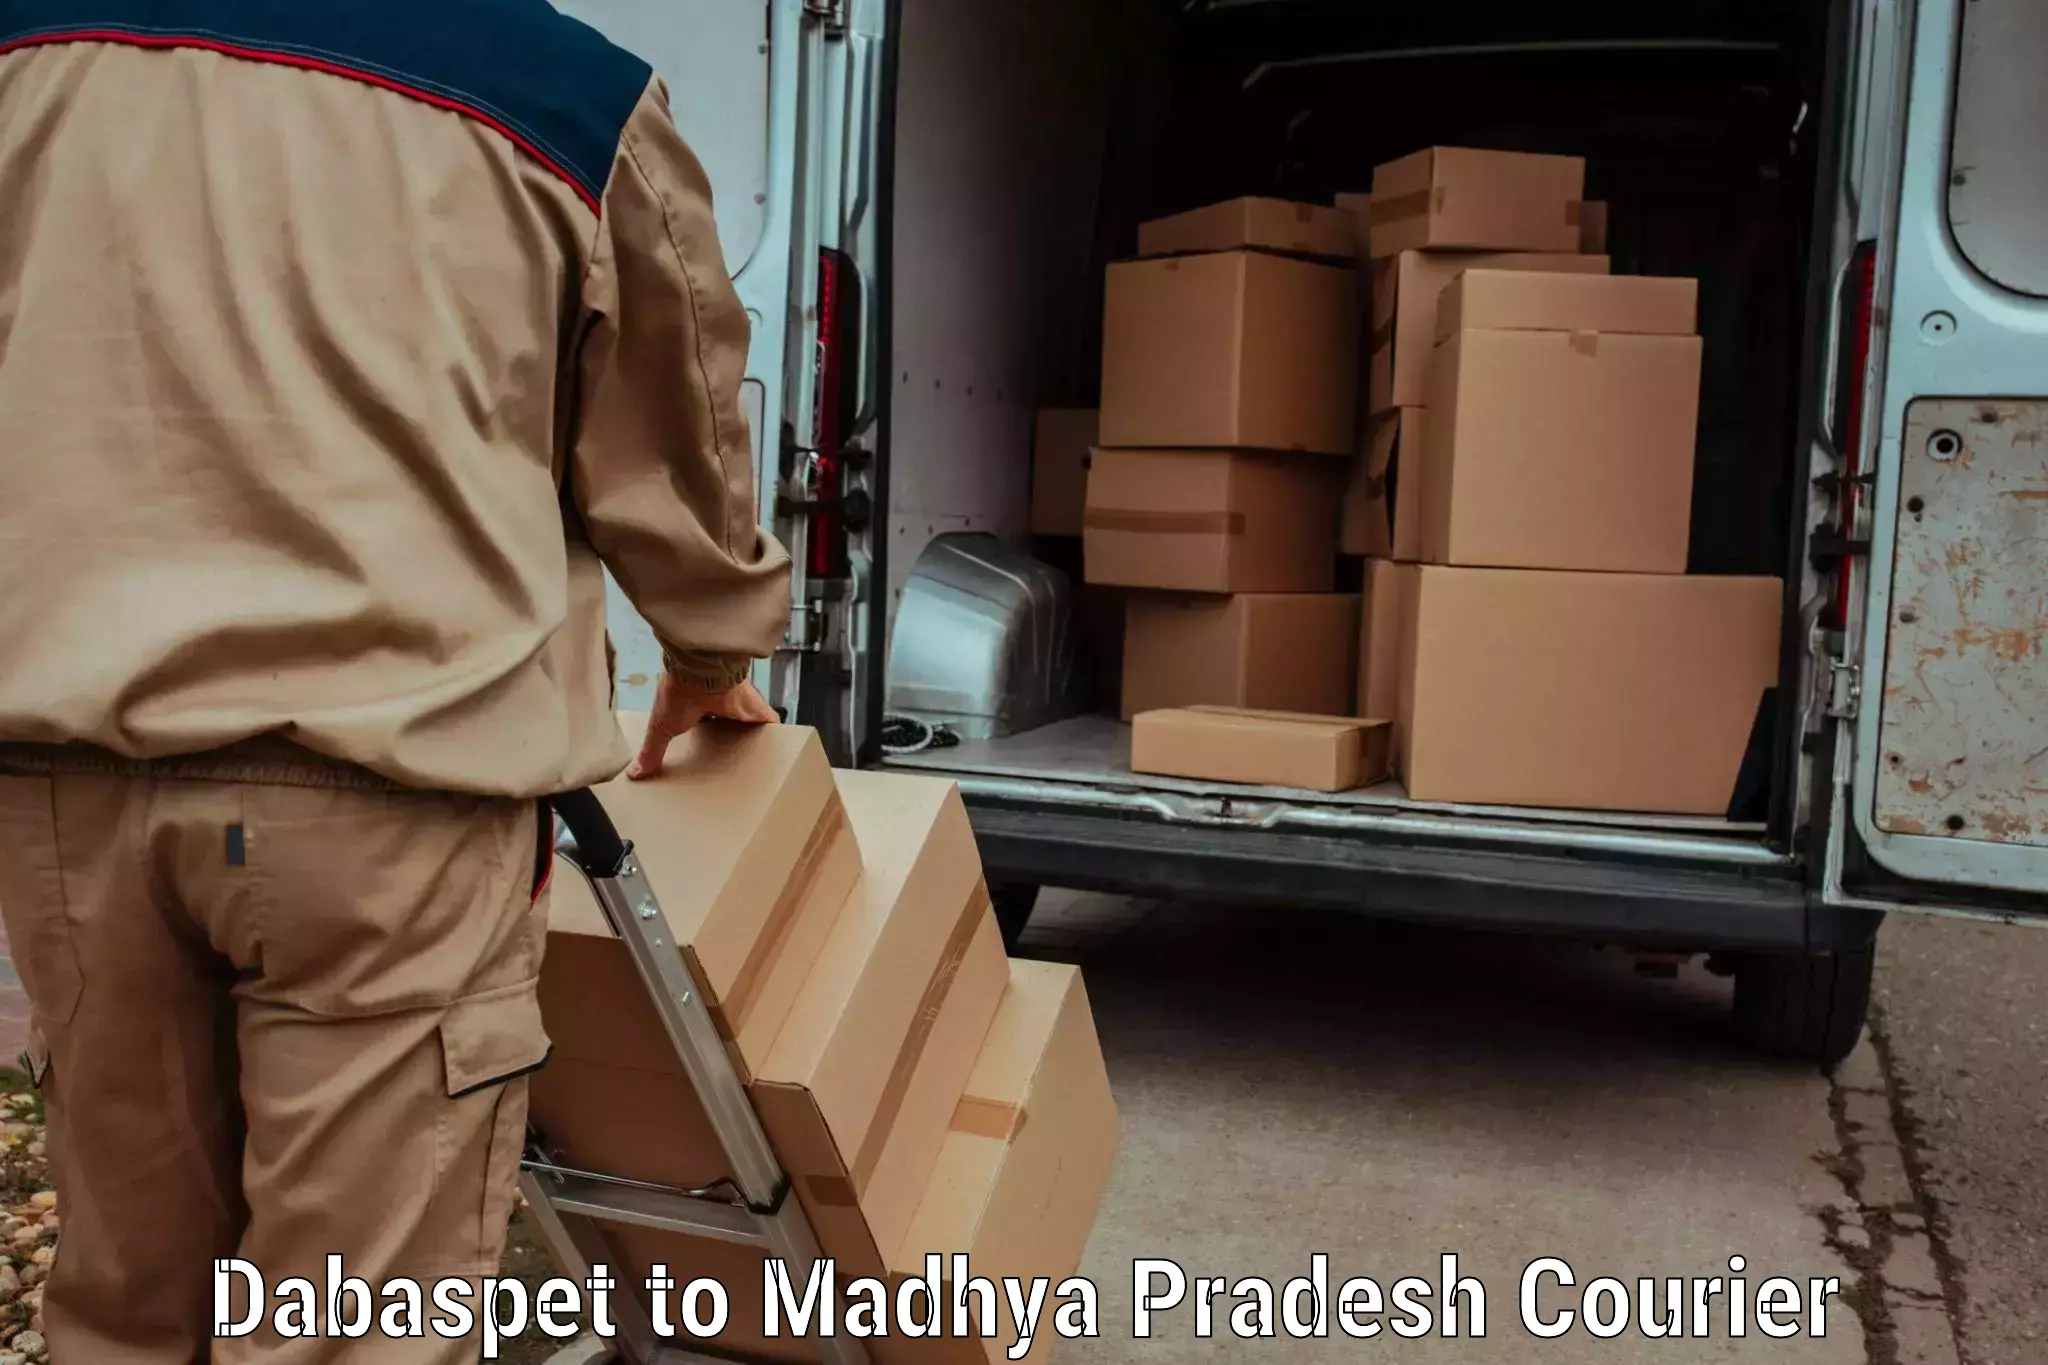 Reliable courier service Dabaspet to Shahpura Dindori